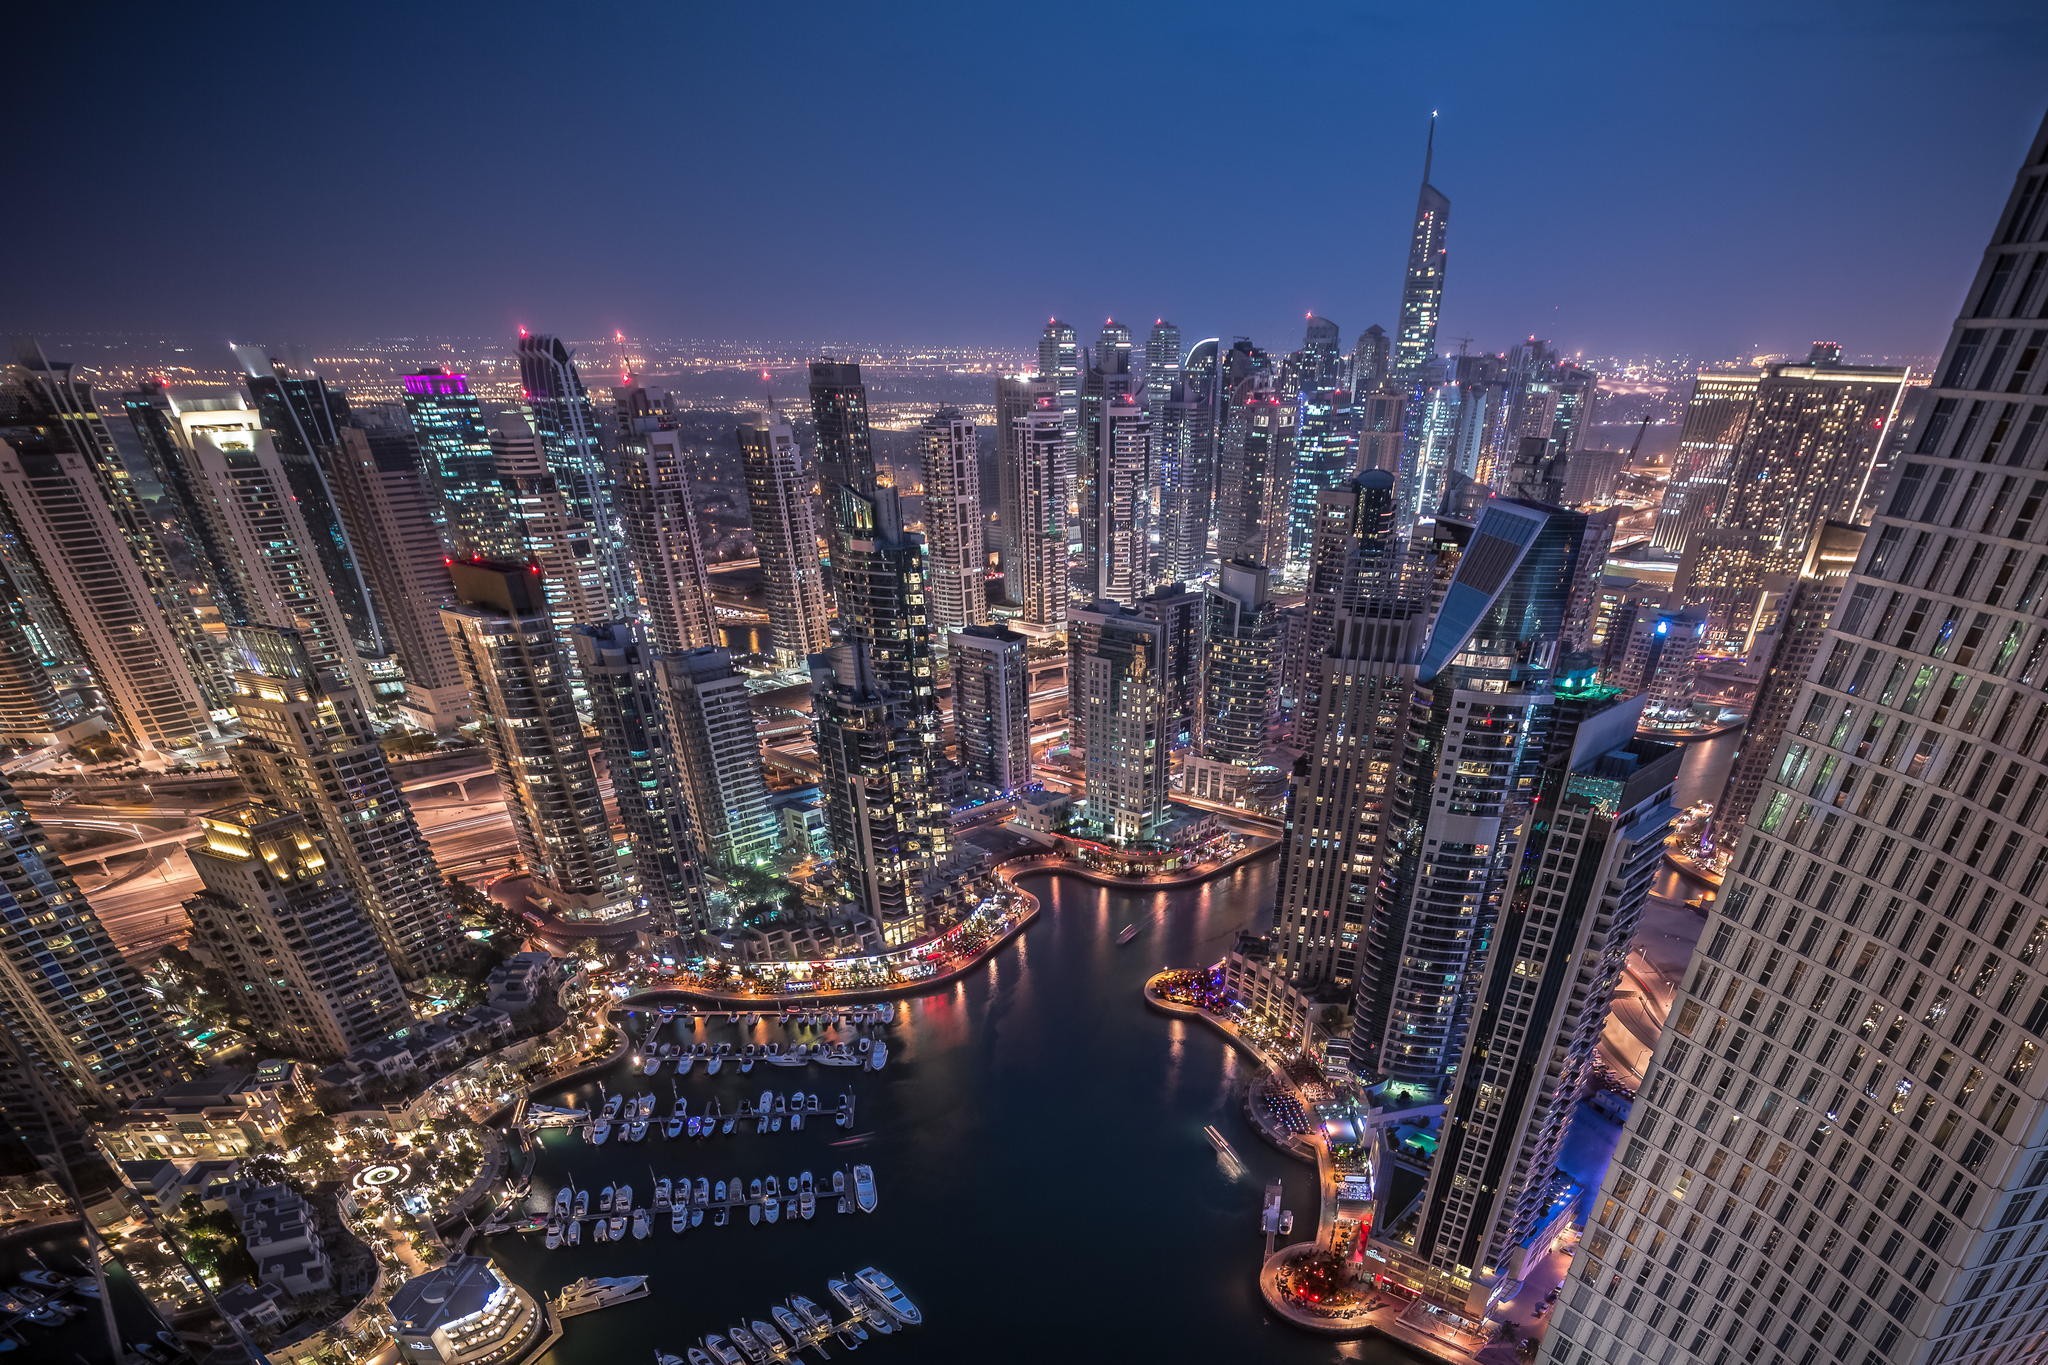 General 2048x1365 Dubai city cityscape night skyscraper city lights